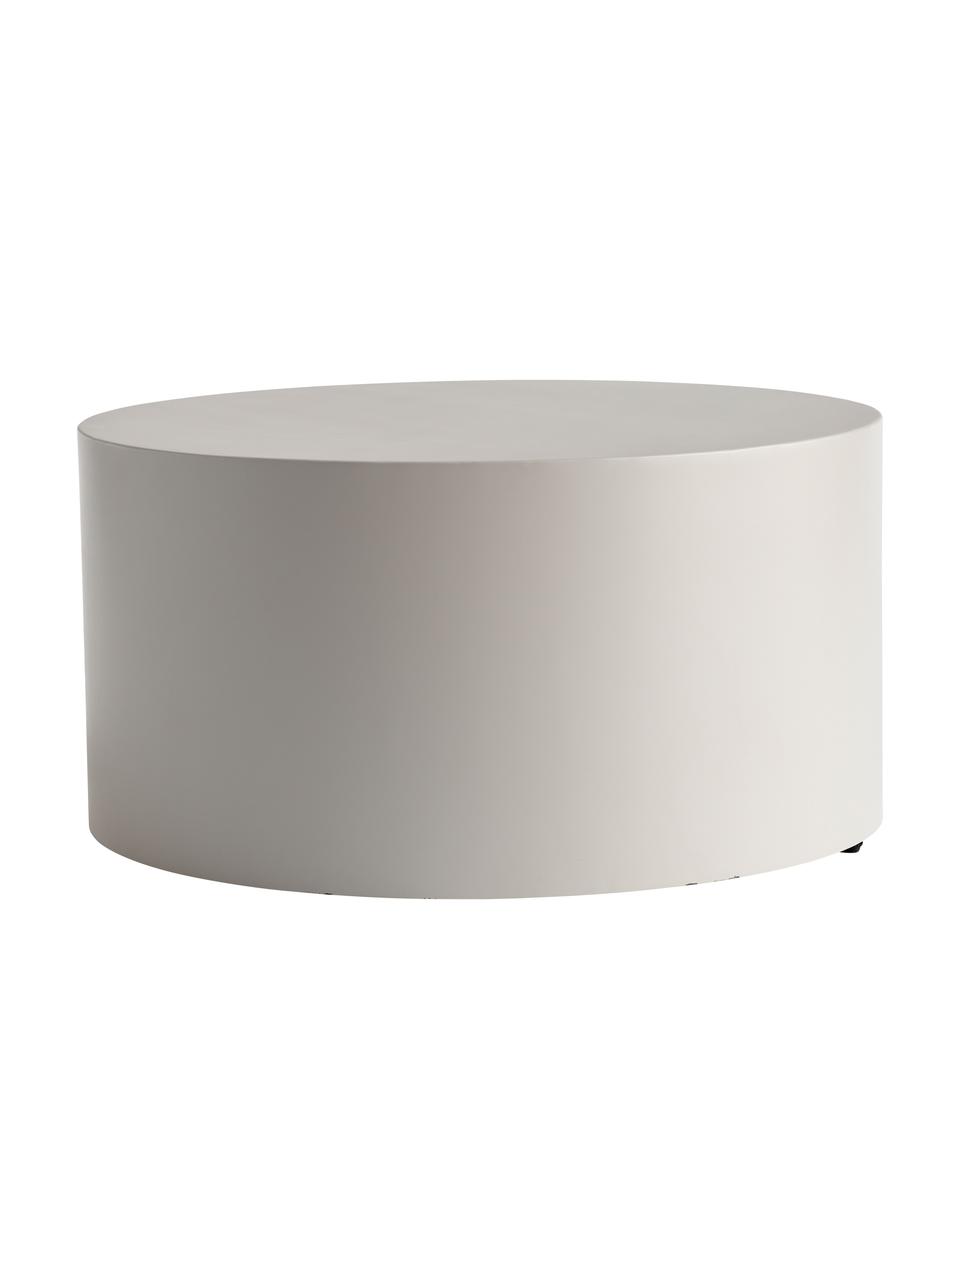 Tavolino rotondo da salotto in metallo grigio chiaro Metdrum, Metallo, Grigio chiaro, Ø 60 x Alt. 30 cm